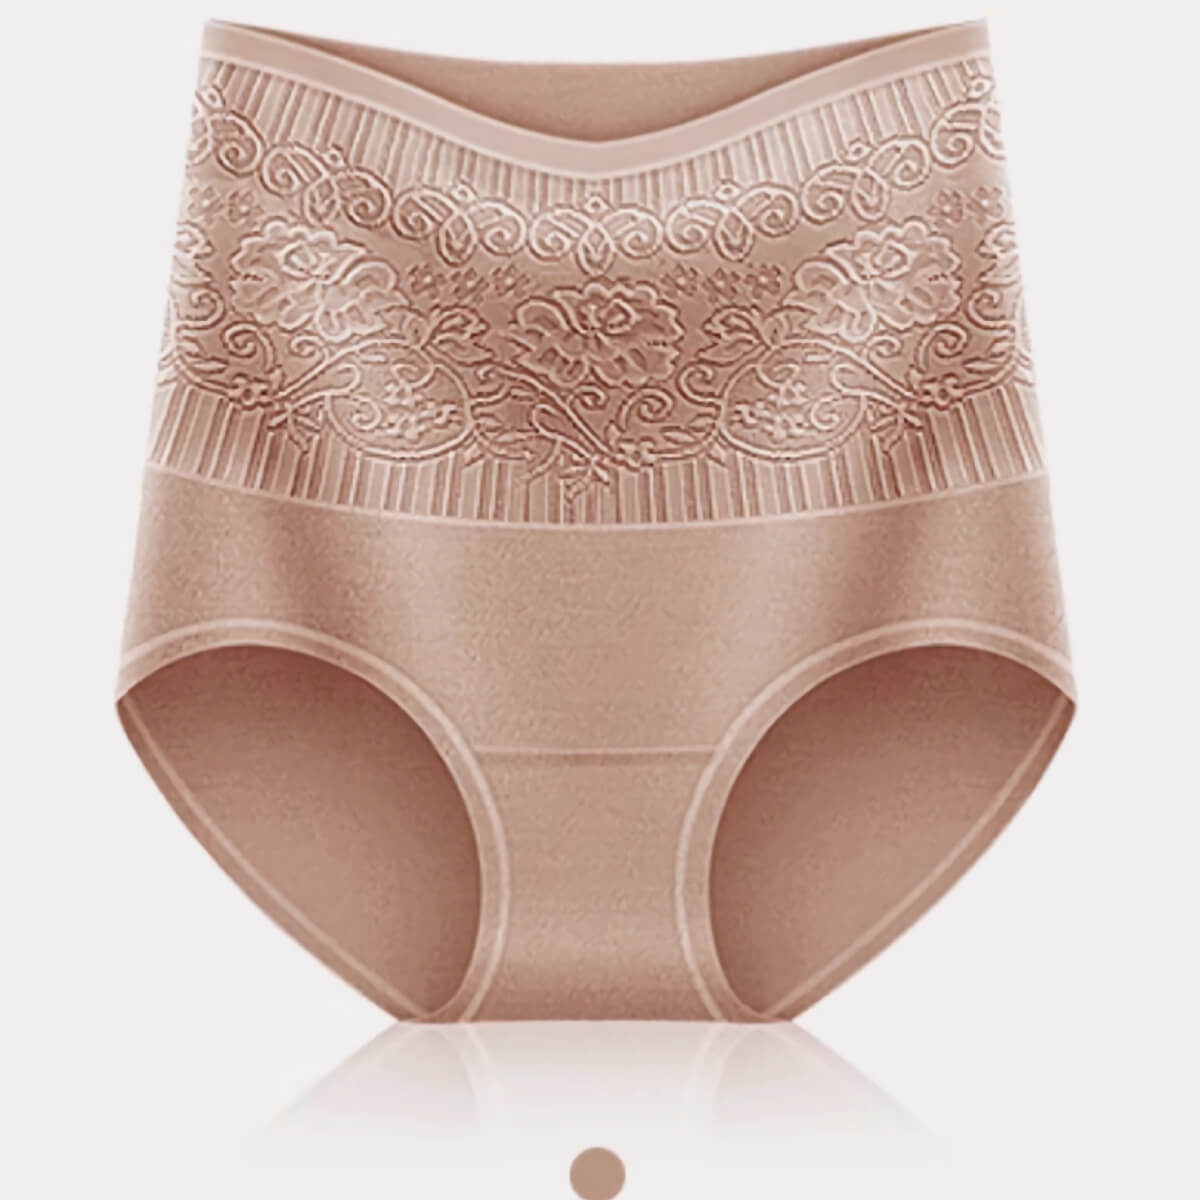 Women's Vanishing Tummy Modern Brief Underwear in Light Red size XL